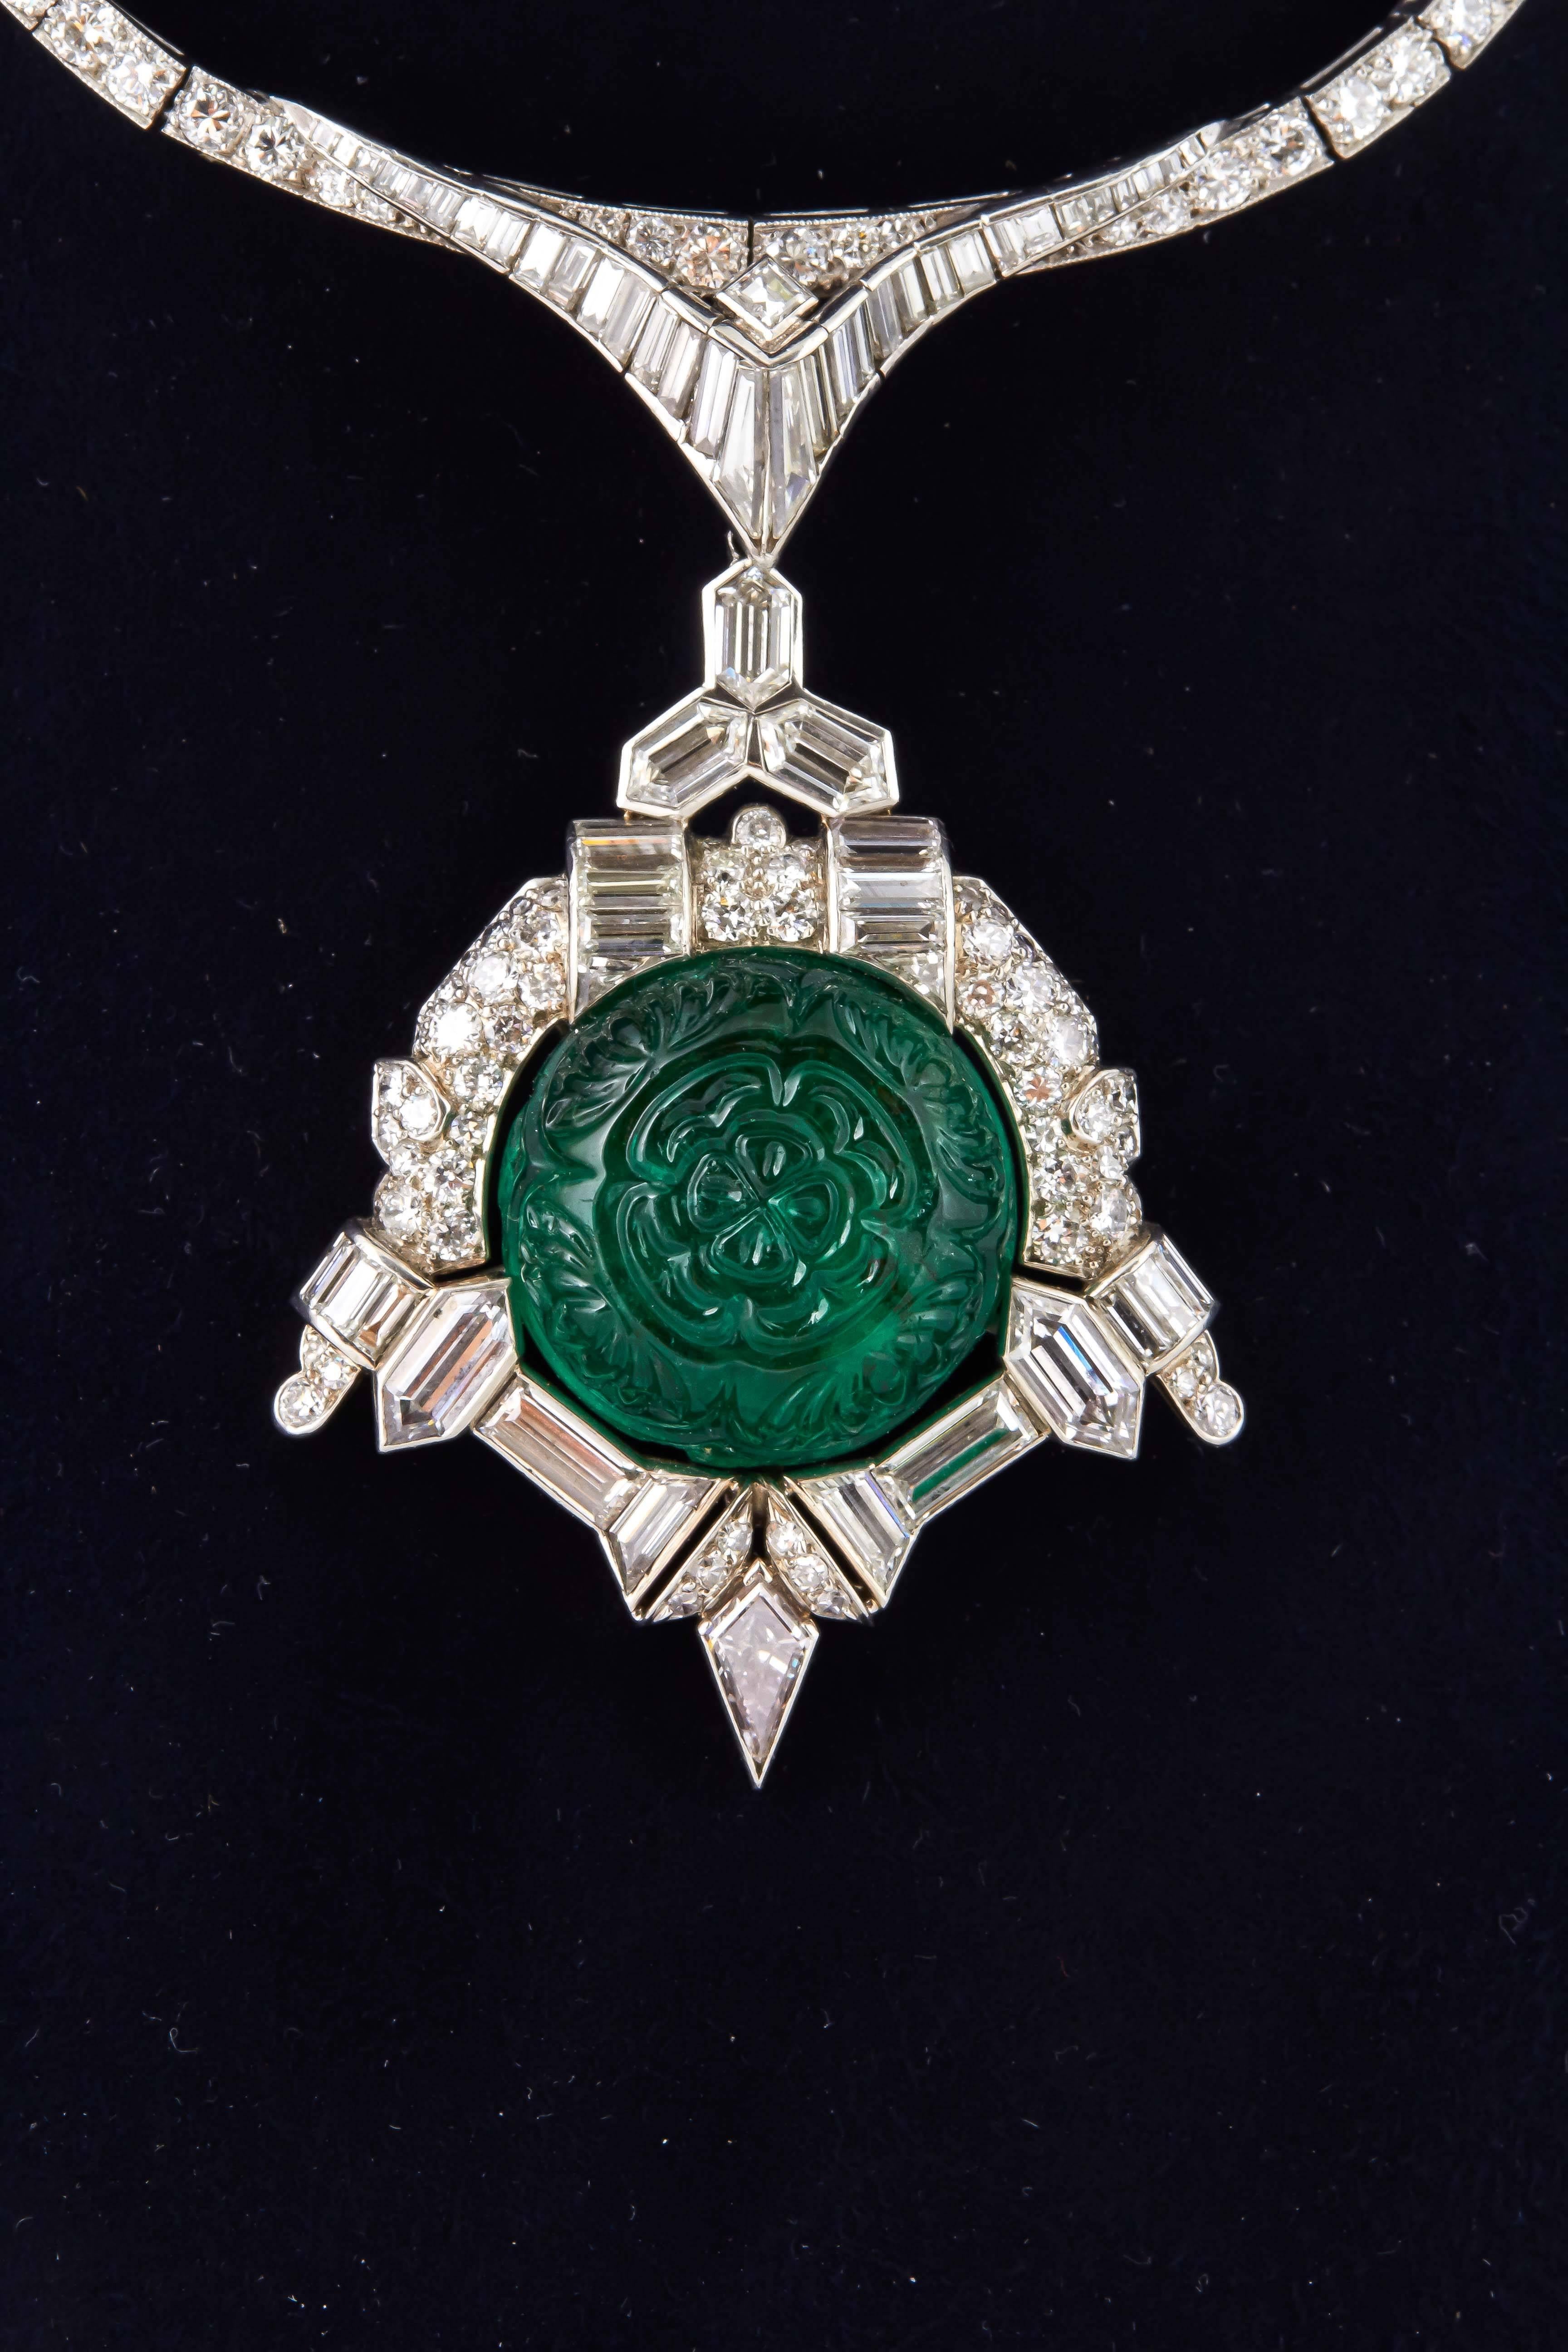 Dies ist eine schöne und einzigartige antike Art Deco Halskette  fein gearbeitet aus Platin mit Diamanten und abnehmbarem Diamant- und Smaragd-Anhänger. Der geschnitzte Smaragd wiegt etwa 35,00 Karat und die Diamanten wiegen insgesamt etwa 30,00